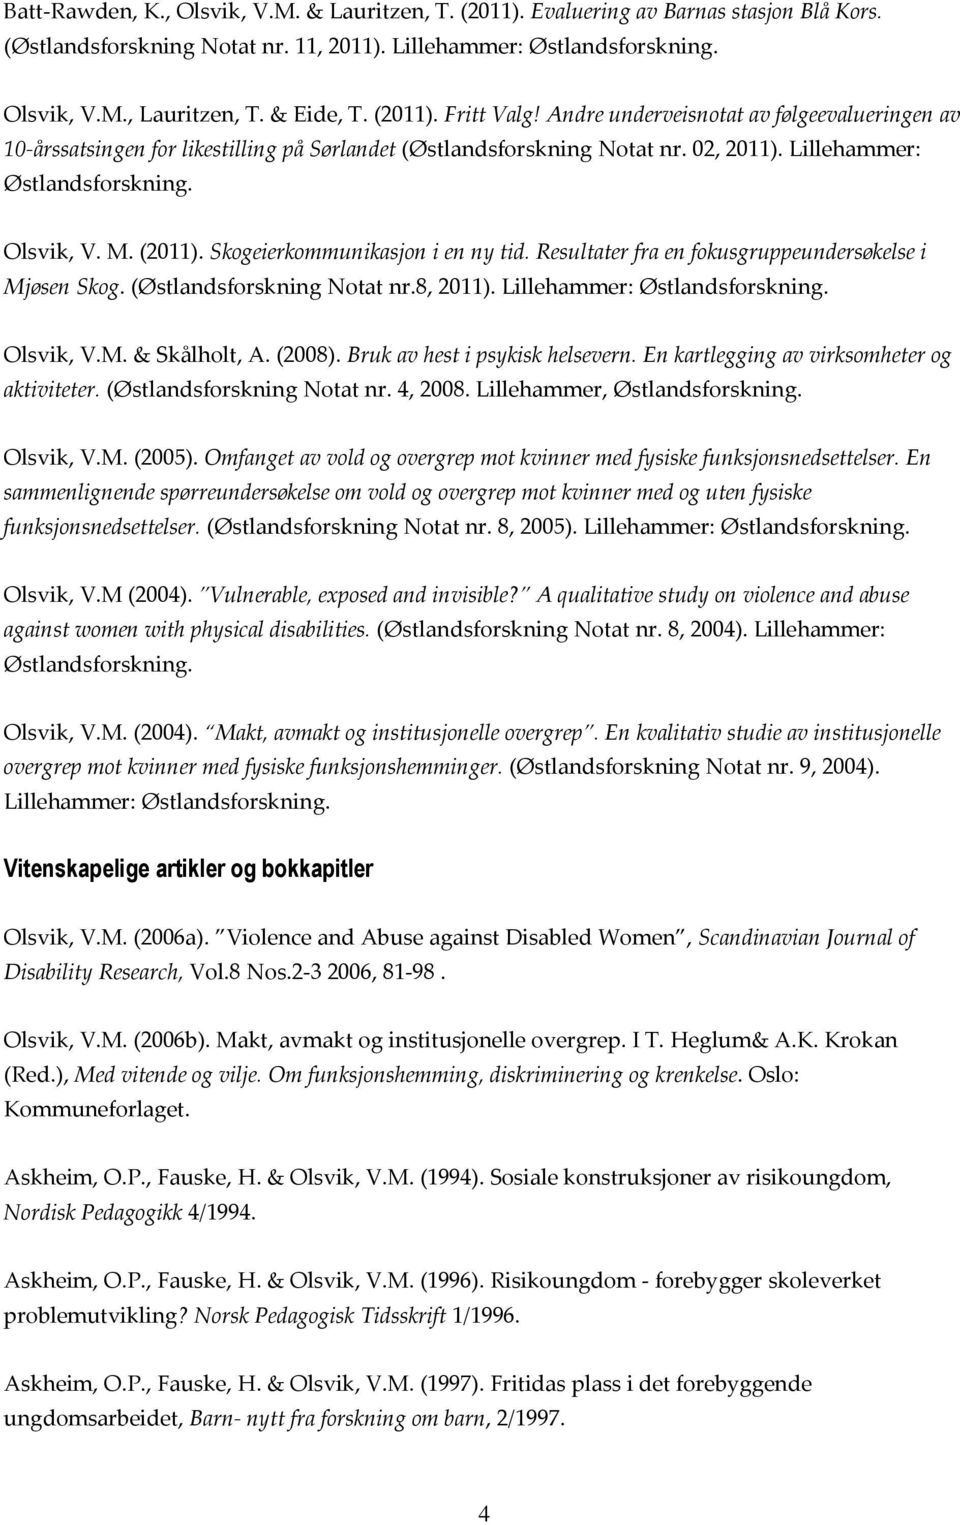 Resultater fra en fokusgruppeundersøkelse i Mjøsen Skog. (Østlandsforskning Notat nr.8, 2011). Lillehammer: Olsvik, V.M. & Skålholt, A. (2008). Bruk av hest i psykisk helsevern.